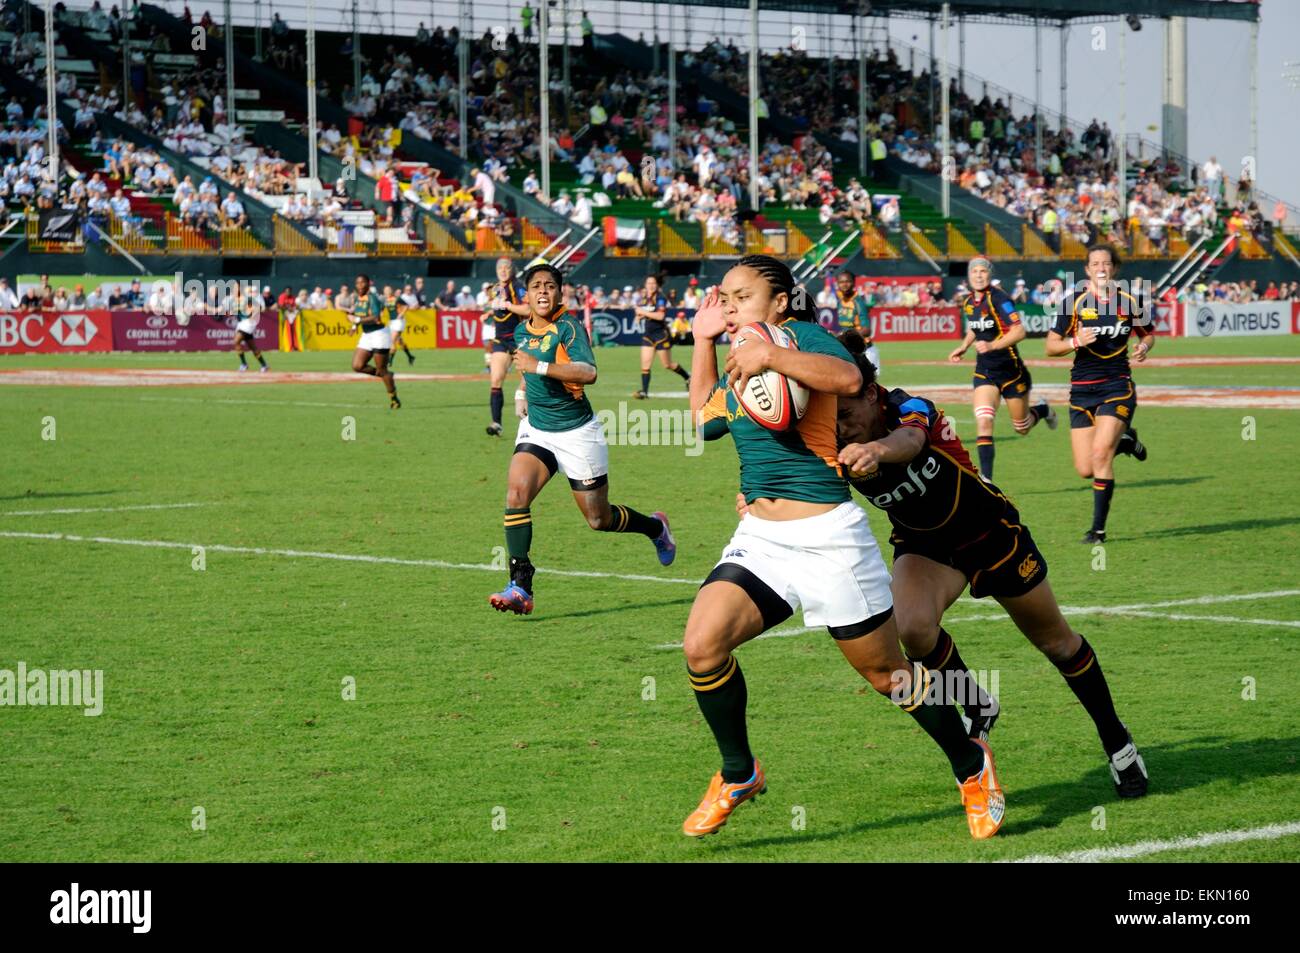 Rugby a 7 femminile immagini e fotografie stock ad alta risoluzione - Alamy